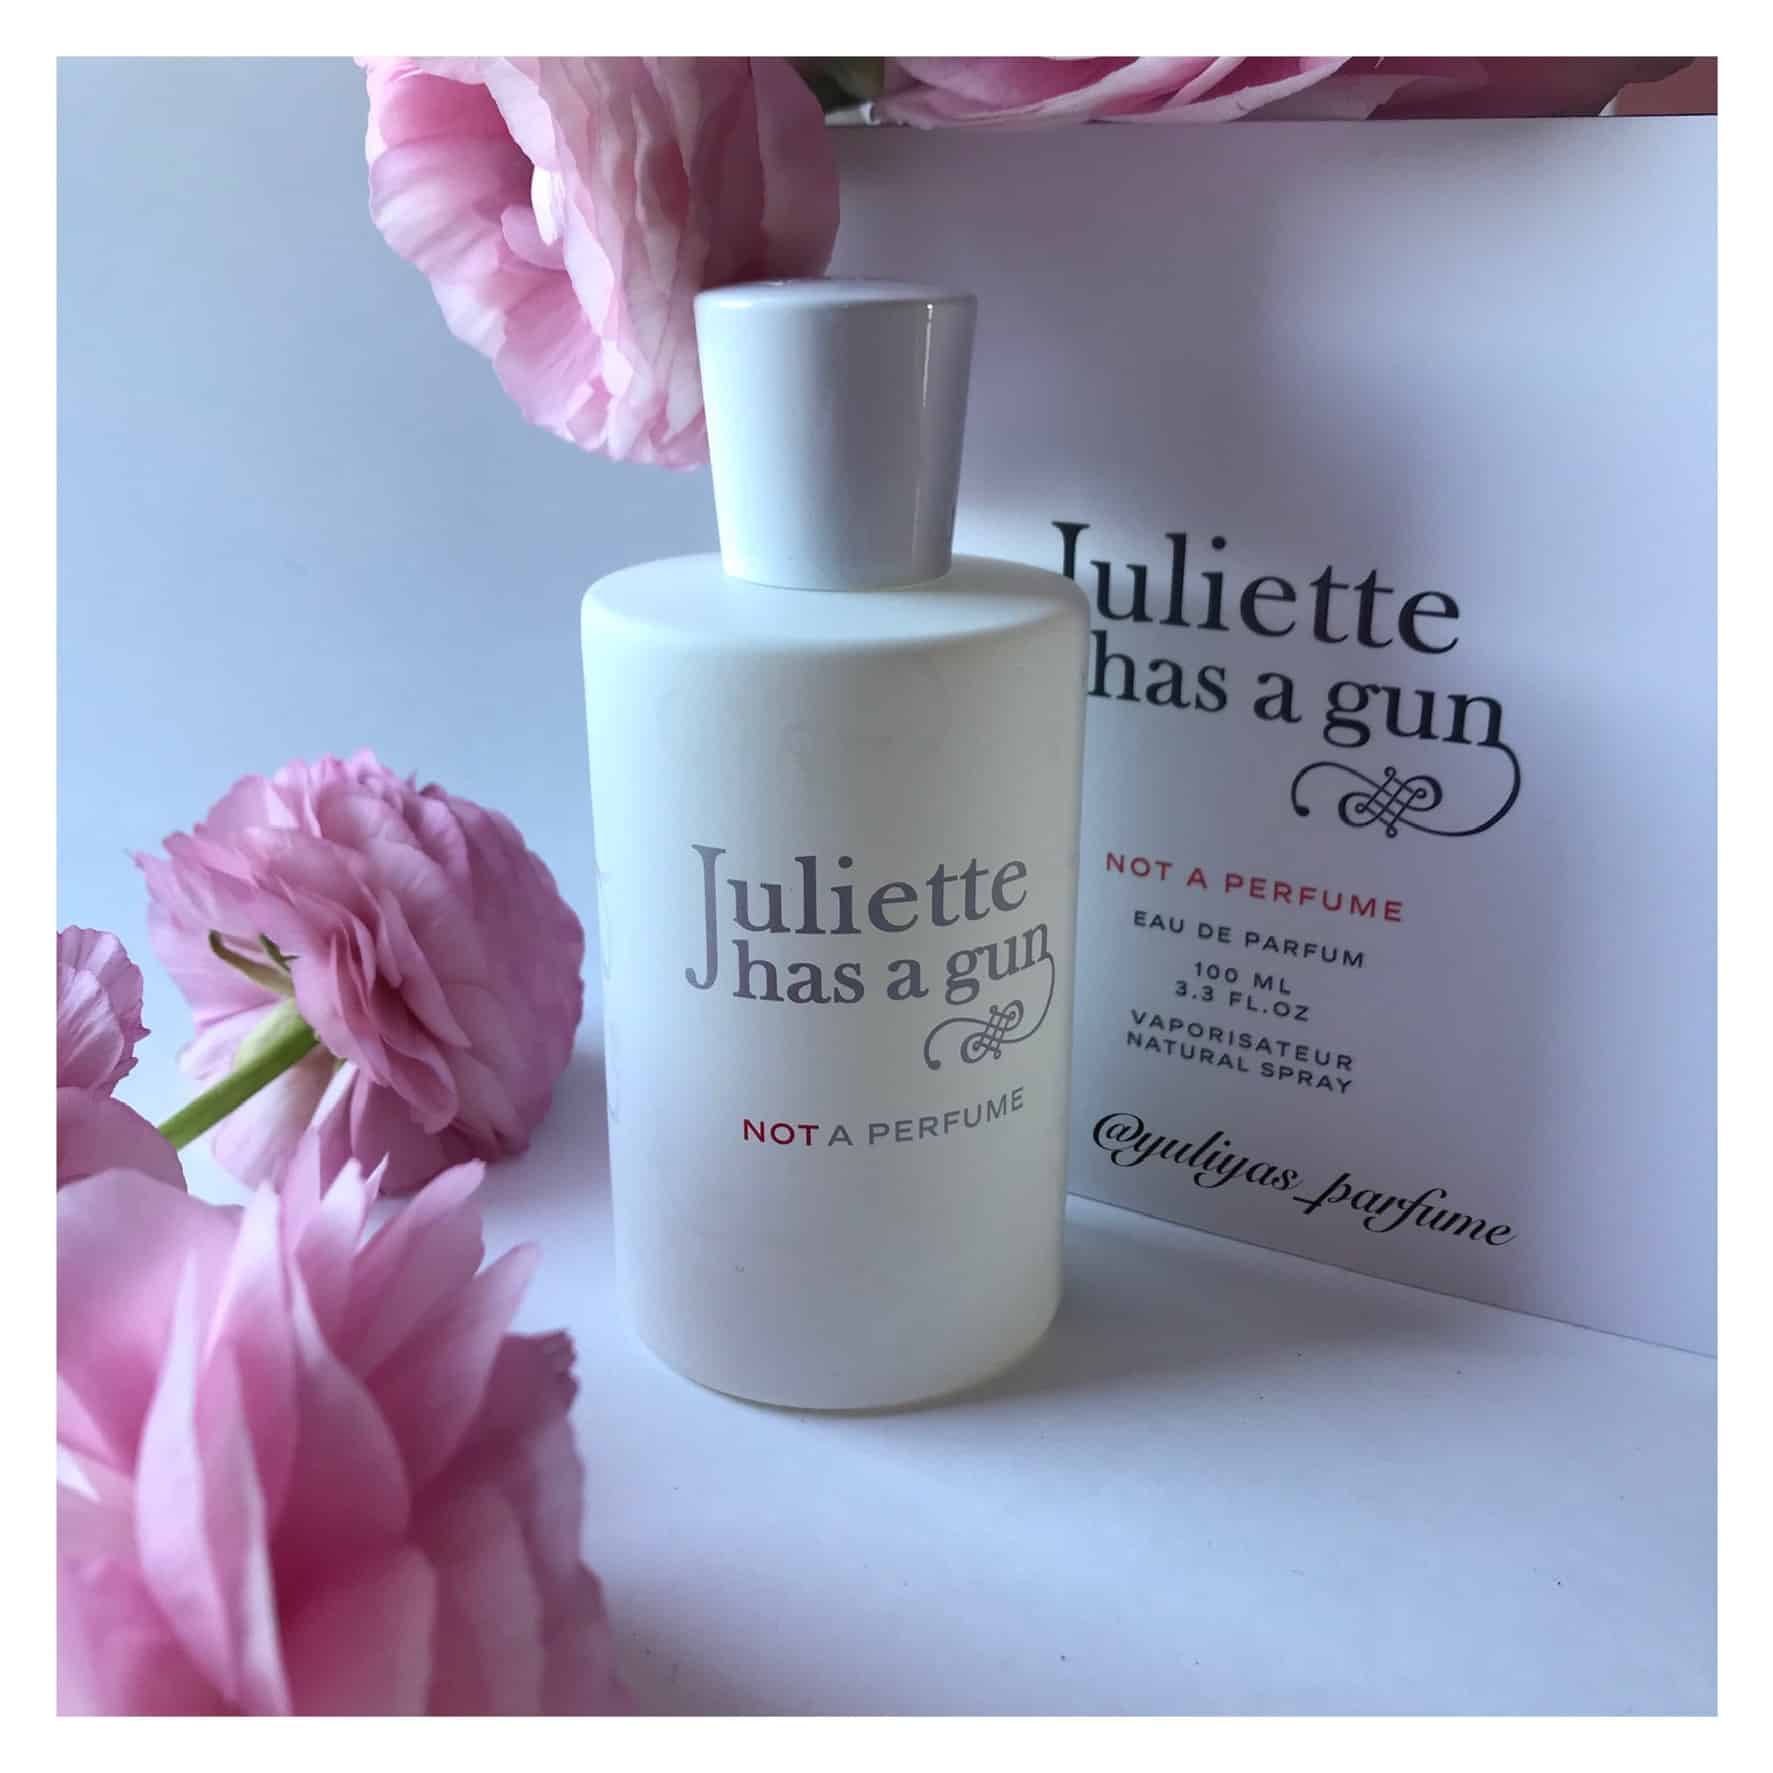 Not a perfume - Juliette has a gun